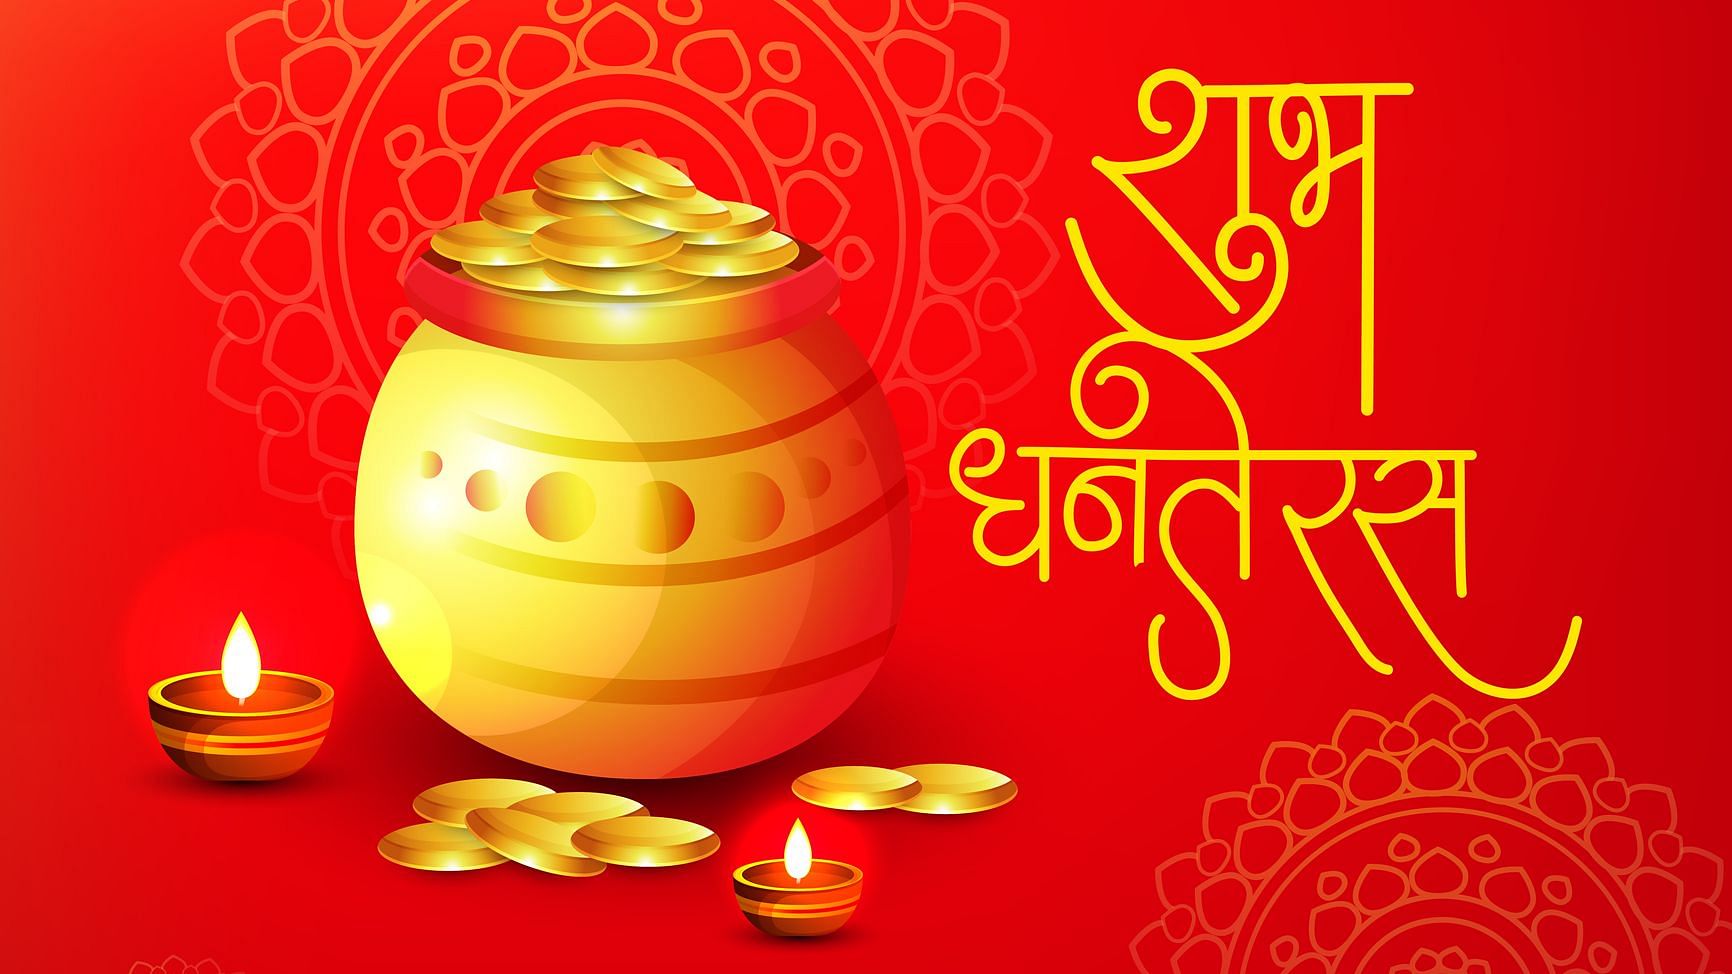 Happy Dhanteras 2019 Images, Quotes Wishes in Hindi: धनतेरस के दिन बर्तन खरीदना शुभ माना जाता है.